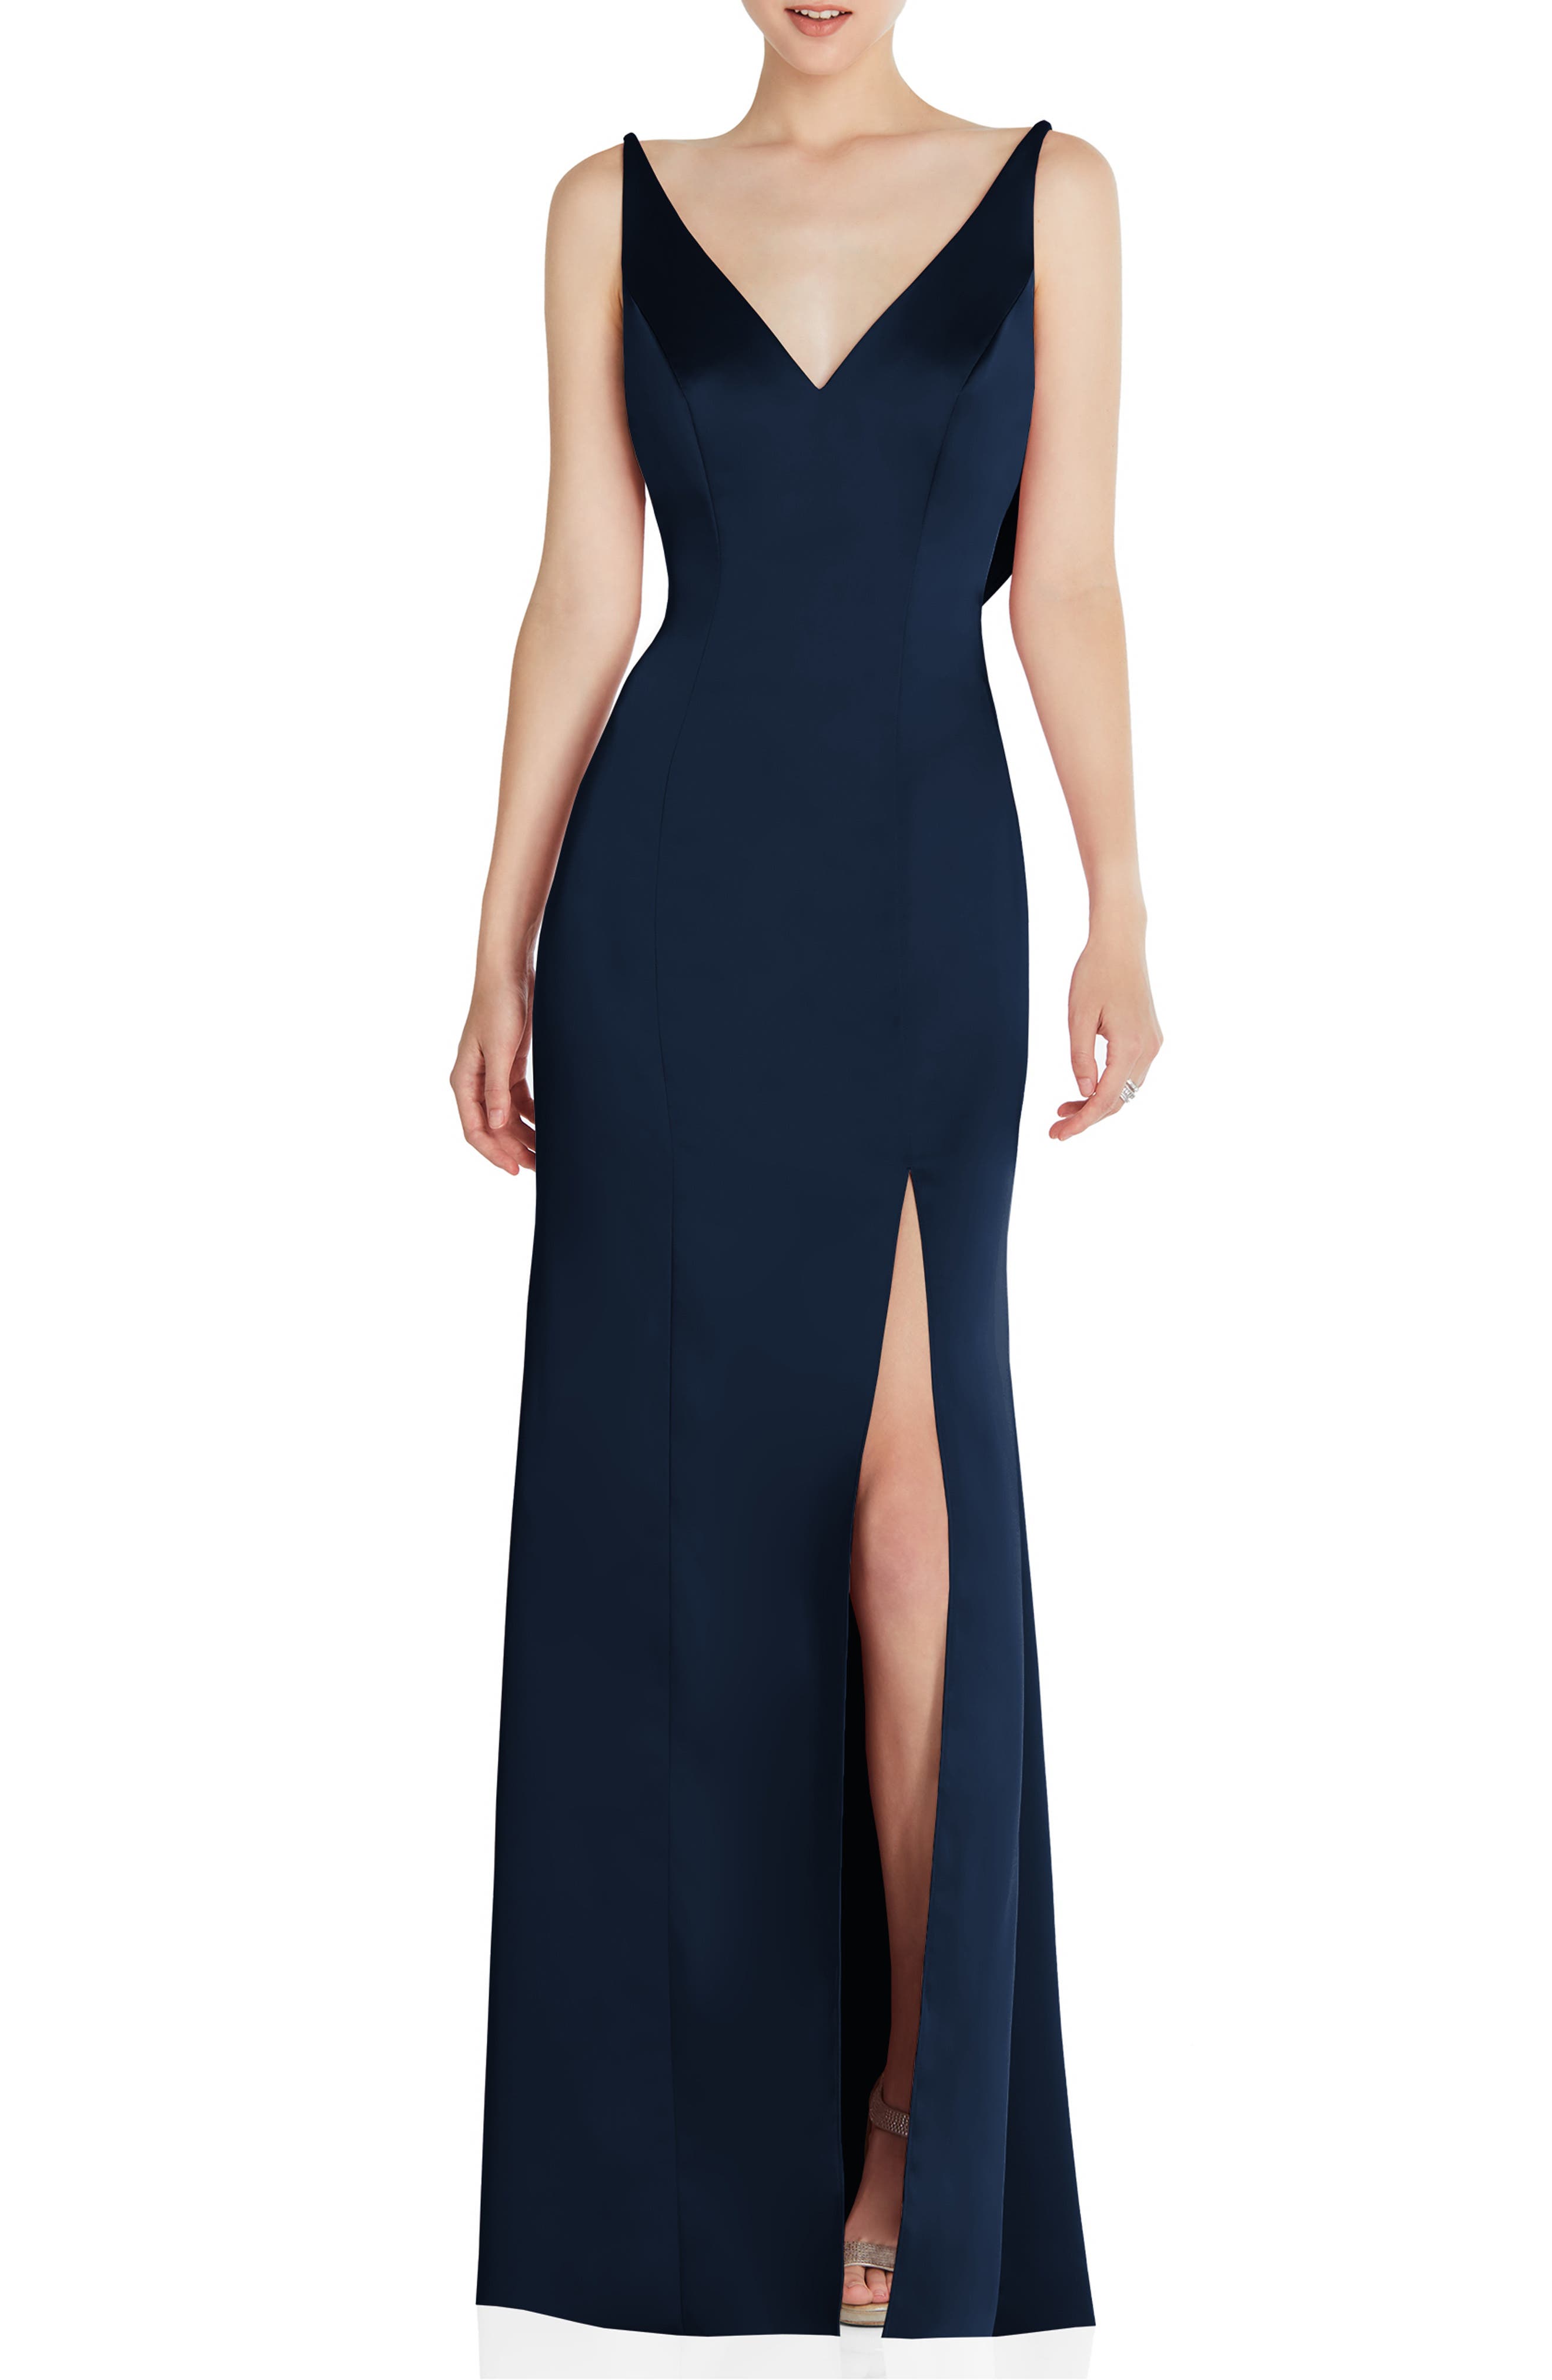 formal dresses for women navy blue ...